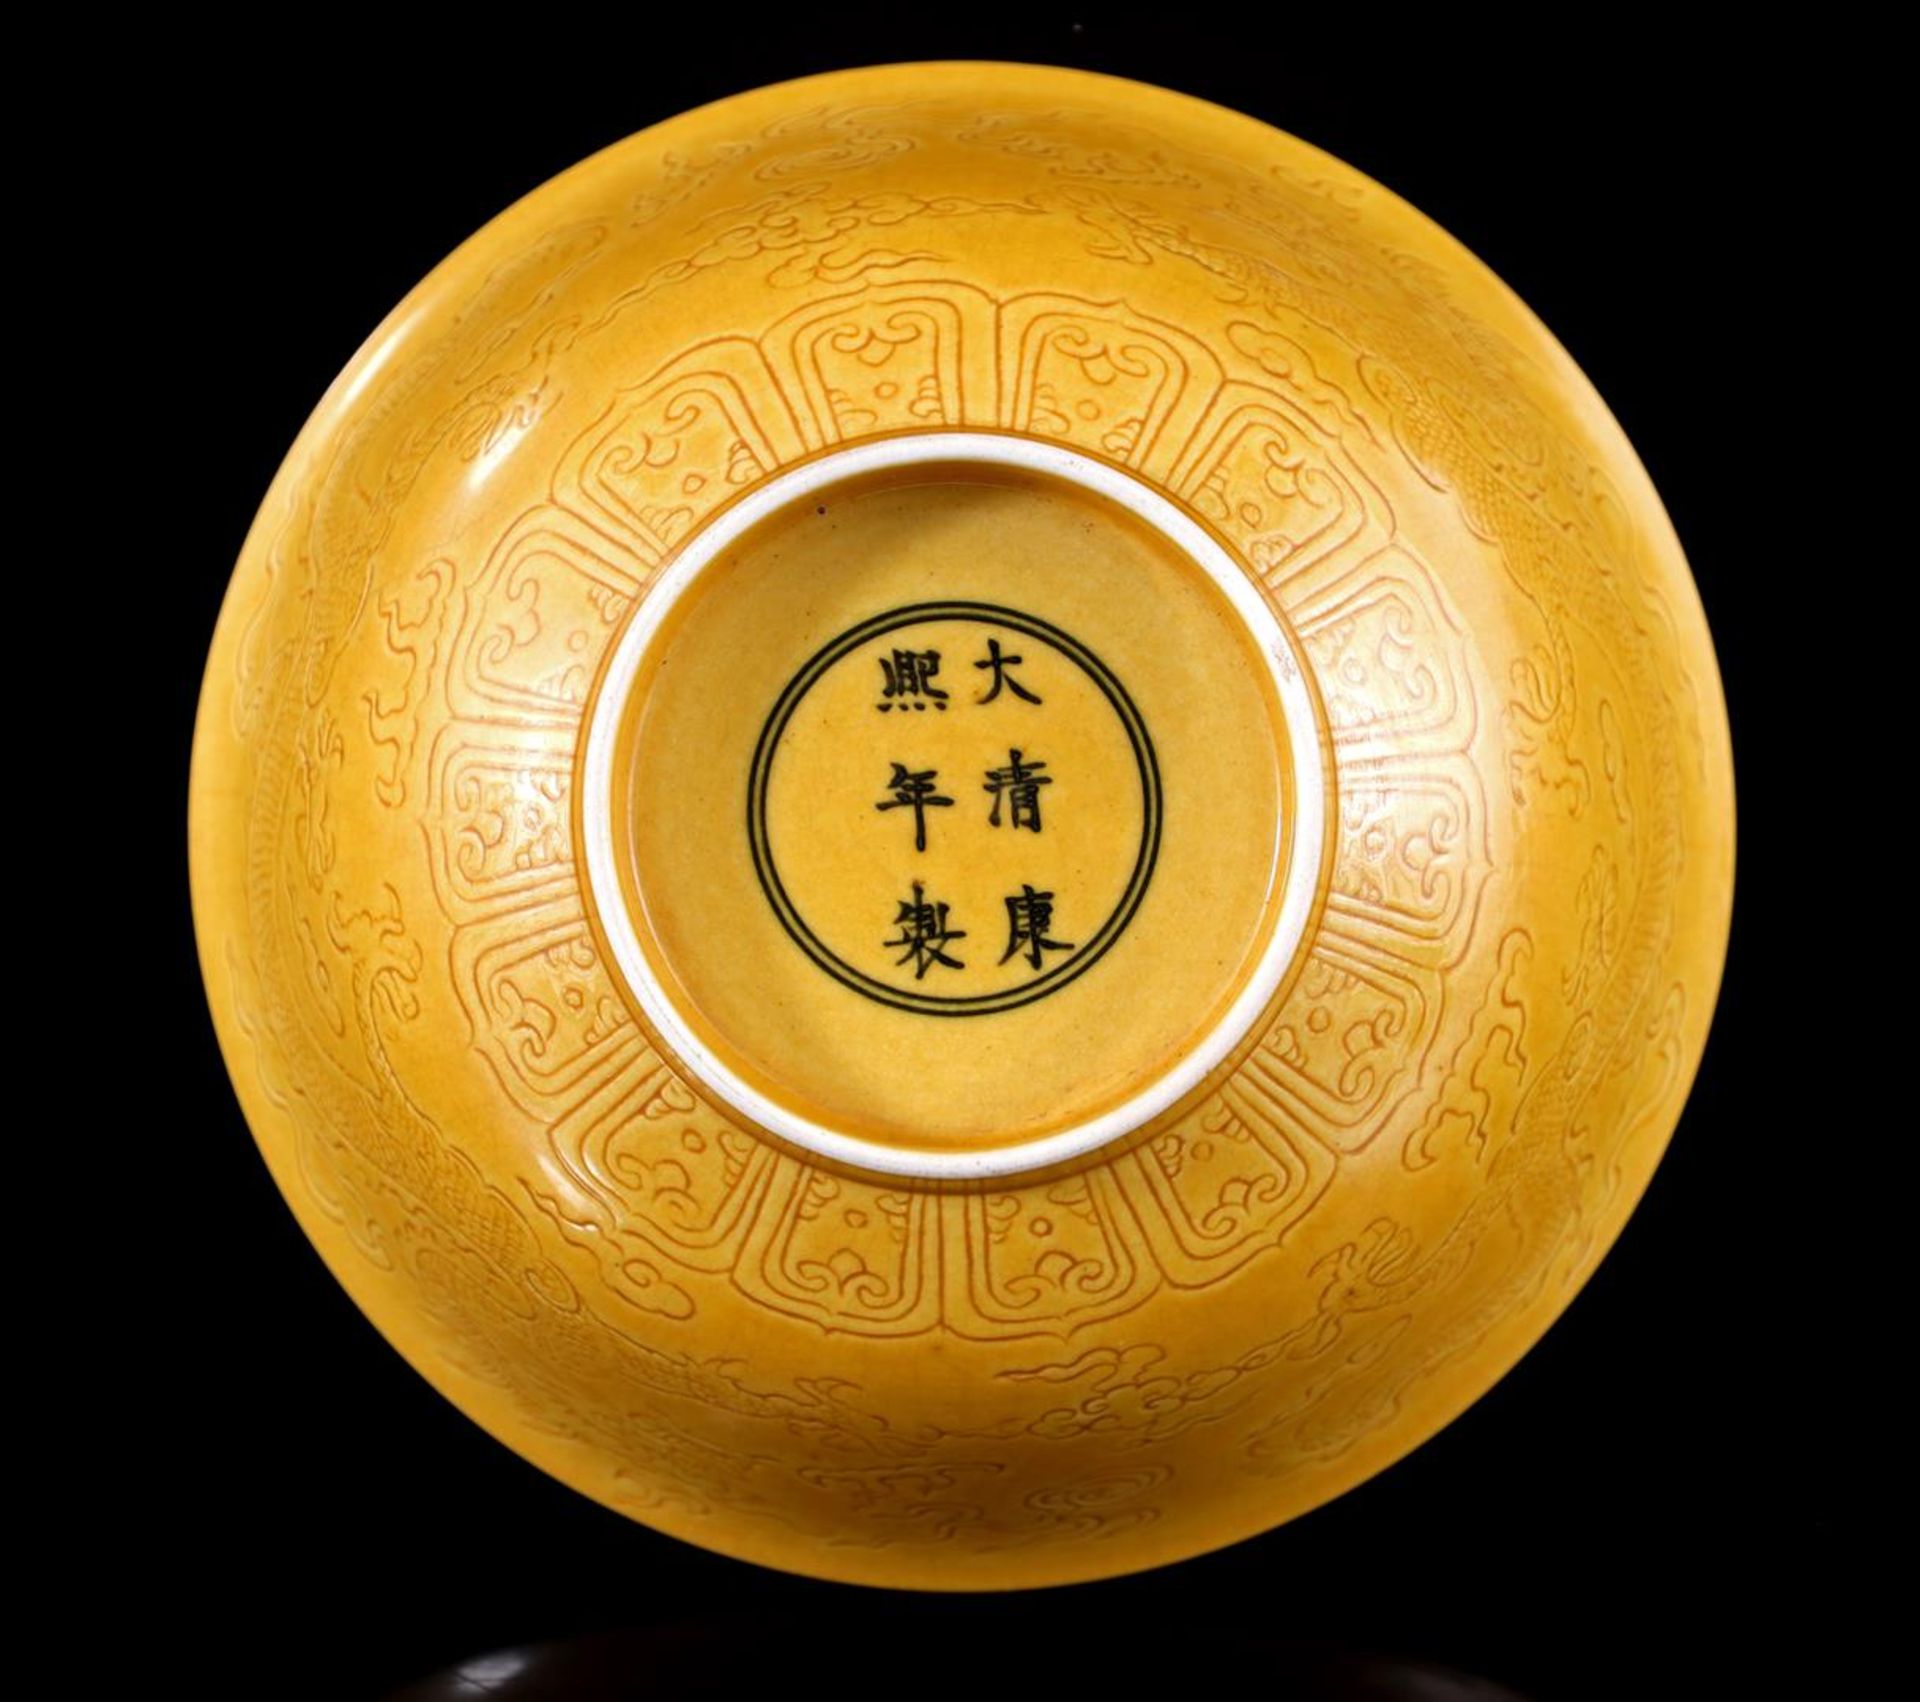 Porcelain bowl - Image 3 of 3